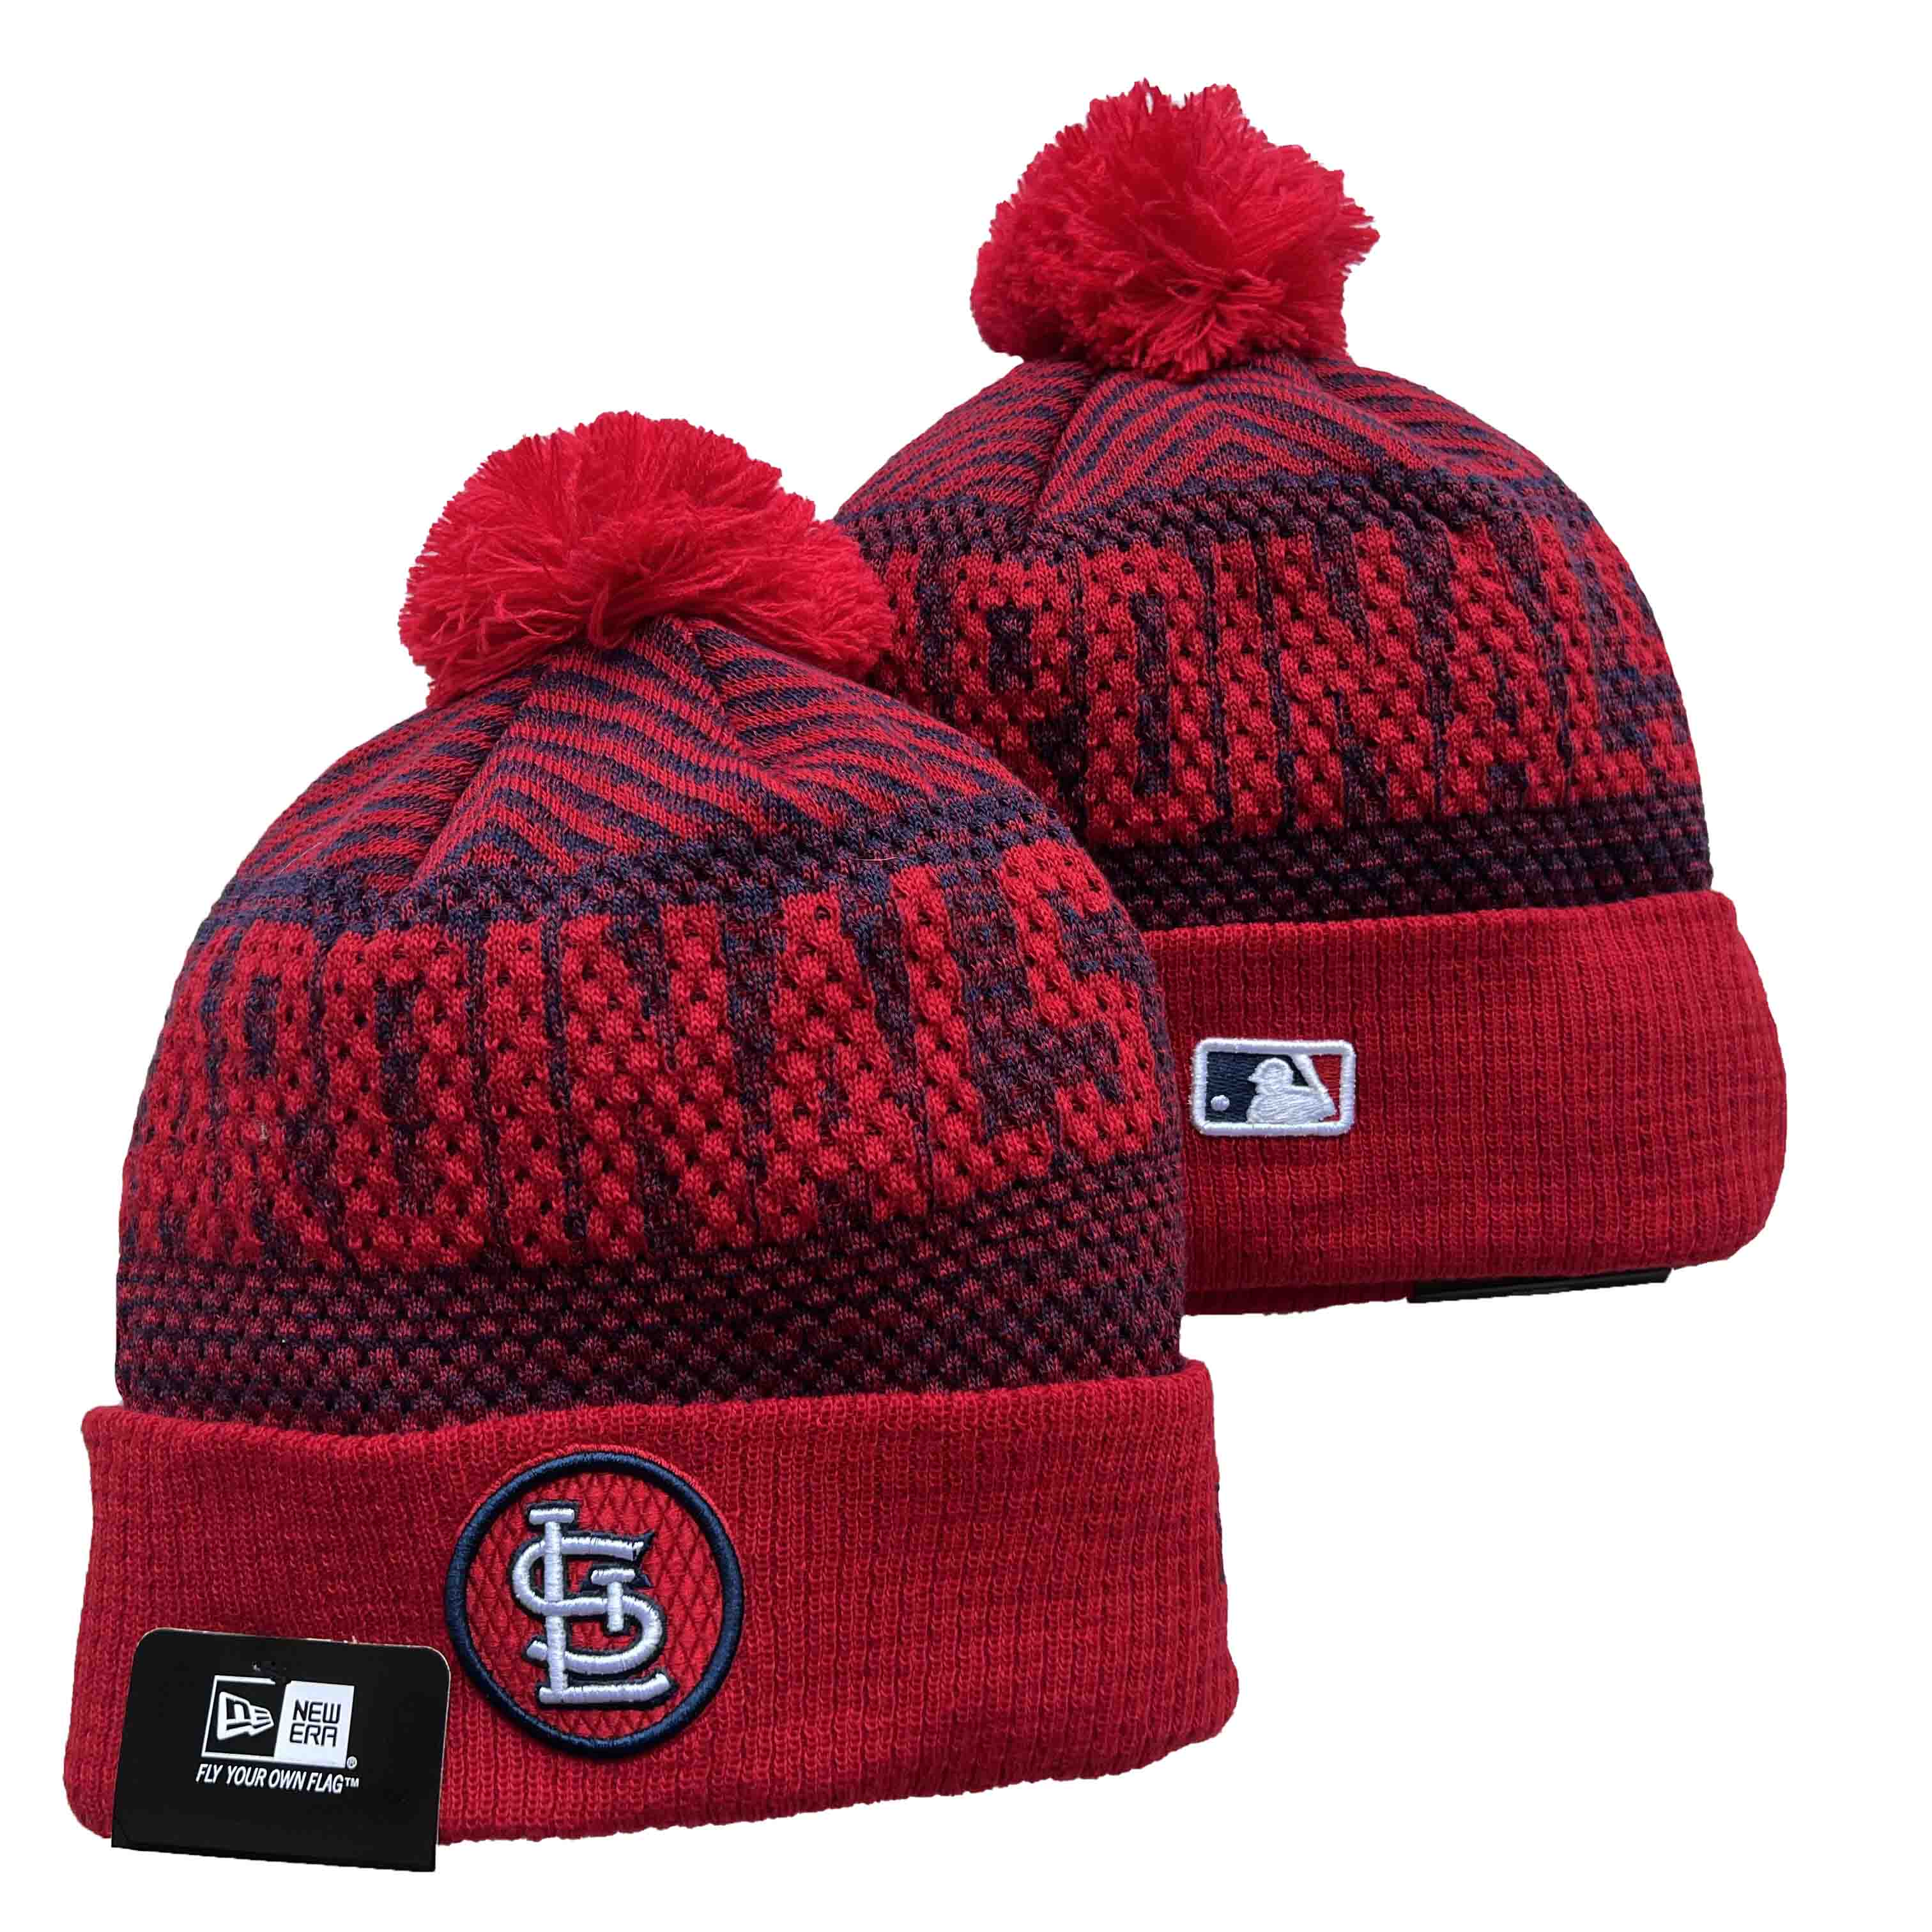 St.Louis Cardinals Knit Hats -1